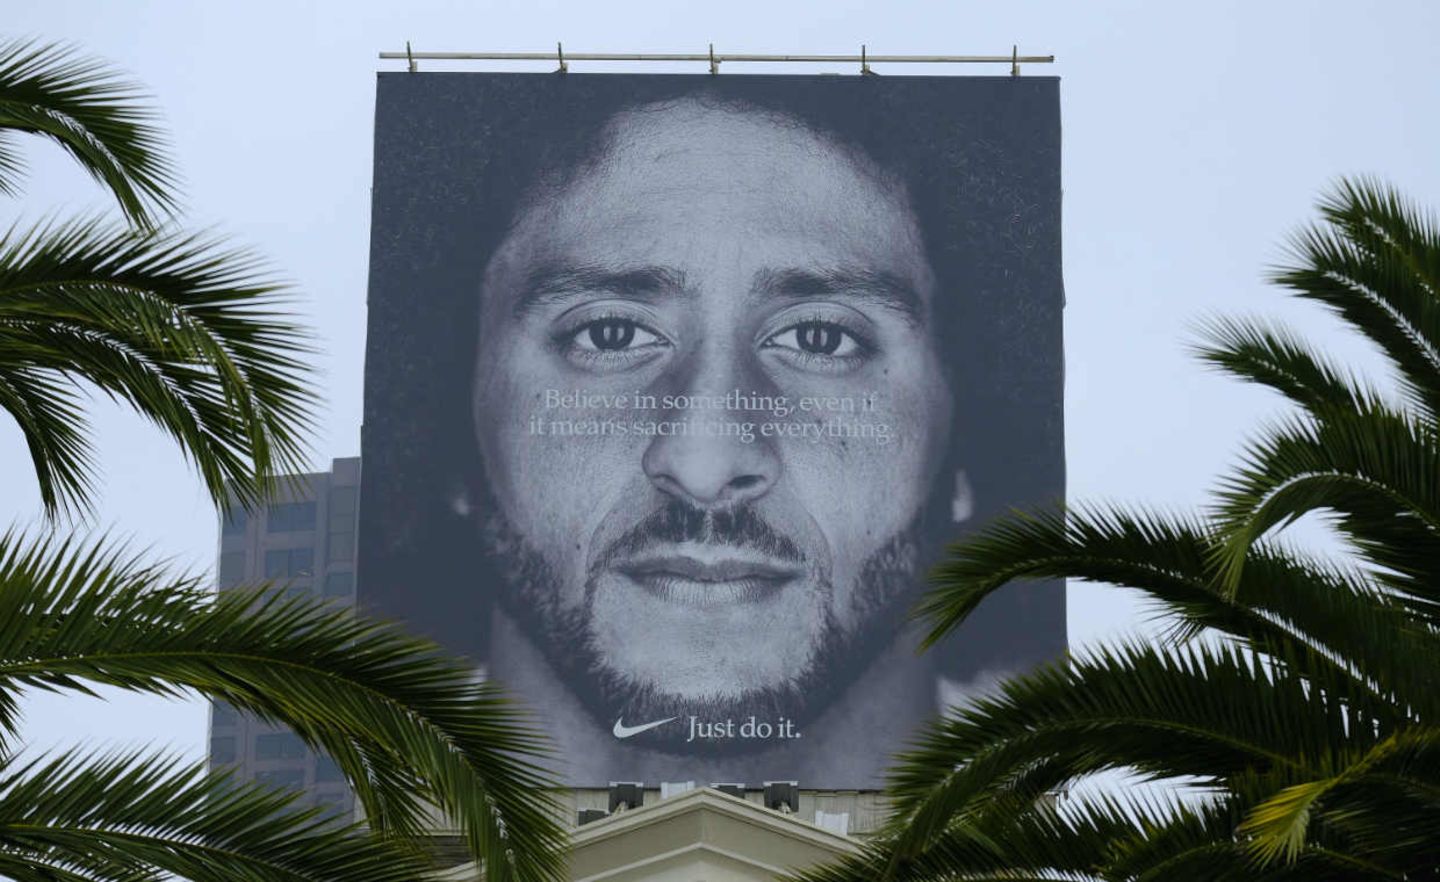 Nike wirbt in den USA mit dem Footballspieler Colin Kaepernick, der sich beim Abspielen der Nationalhymne hingekniet hat, um gegen Rassismus und Polizeigewalt zu protestieren